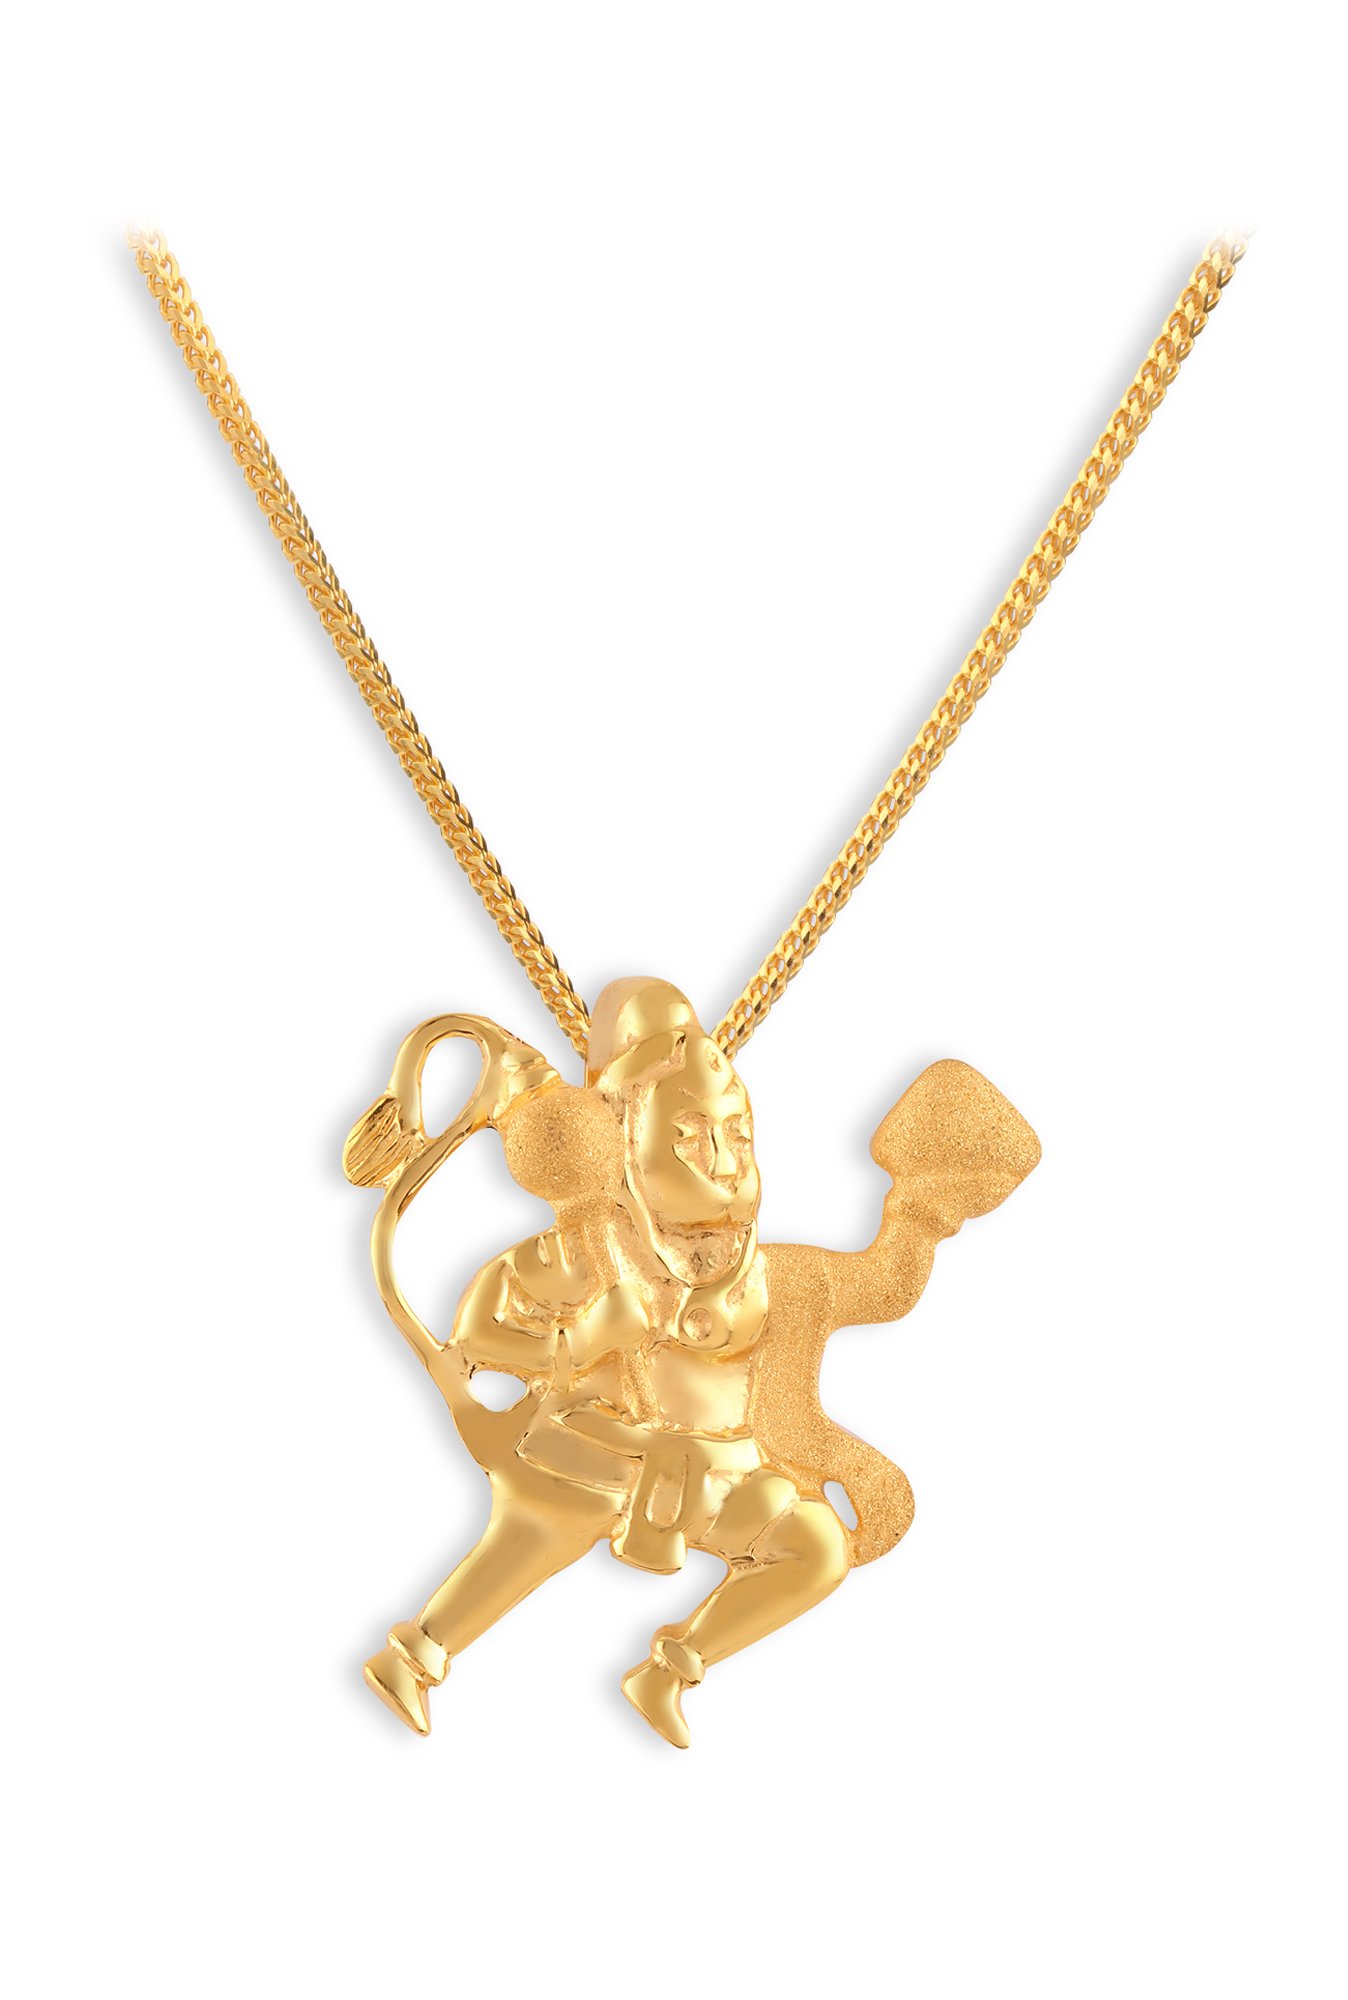 Buy Tanishq Hanuman 22k Gold Pendant 